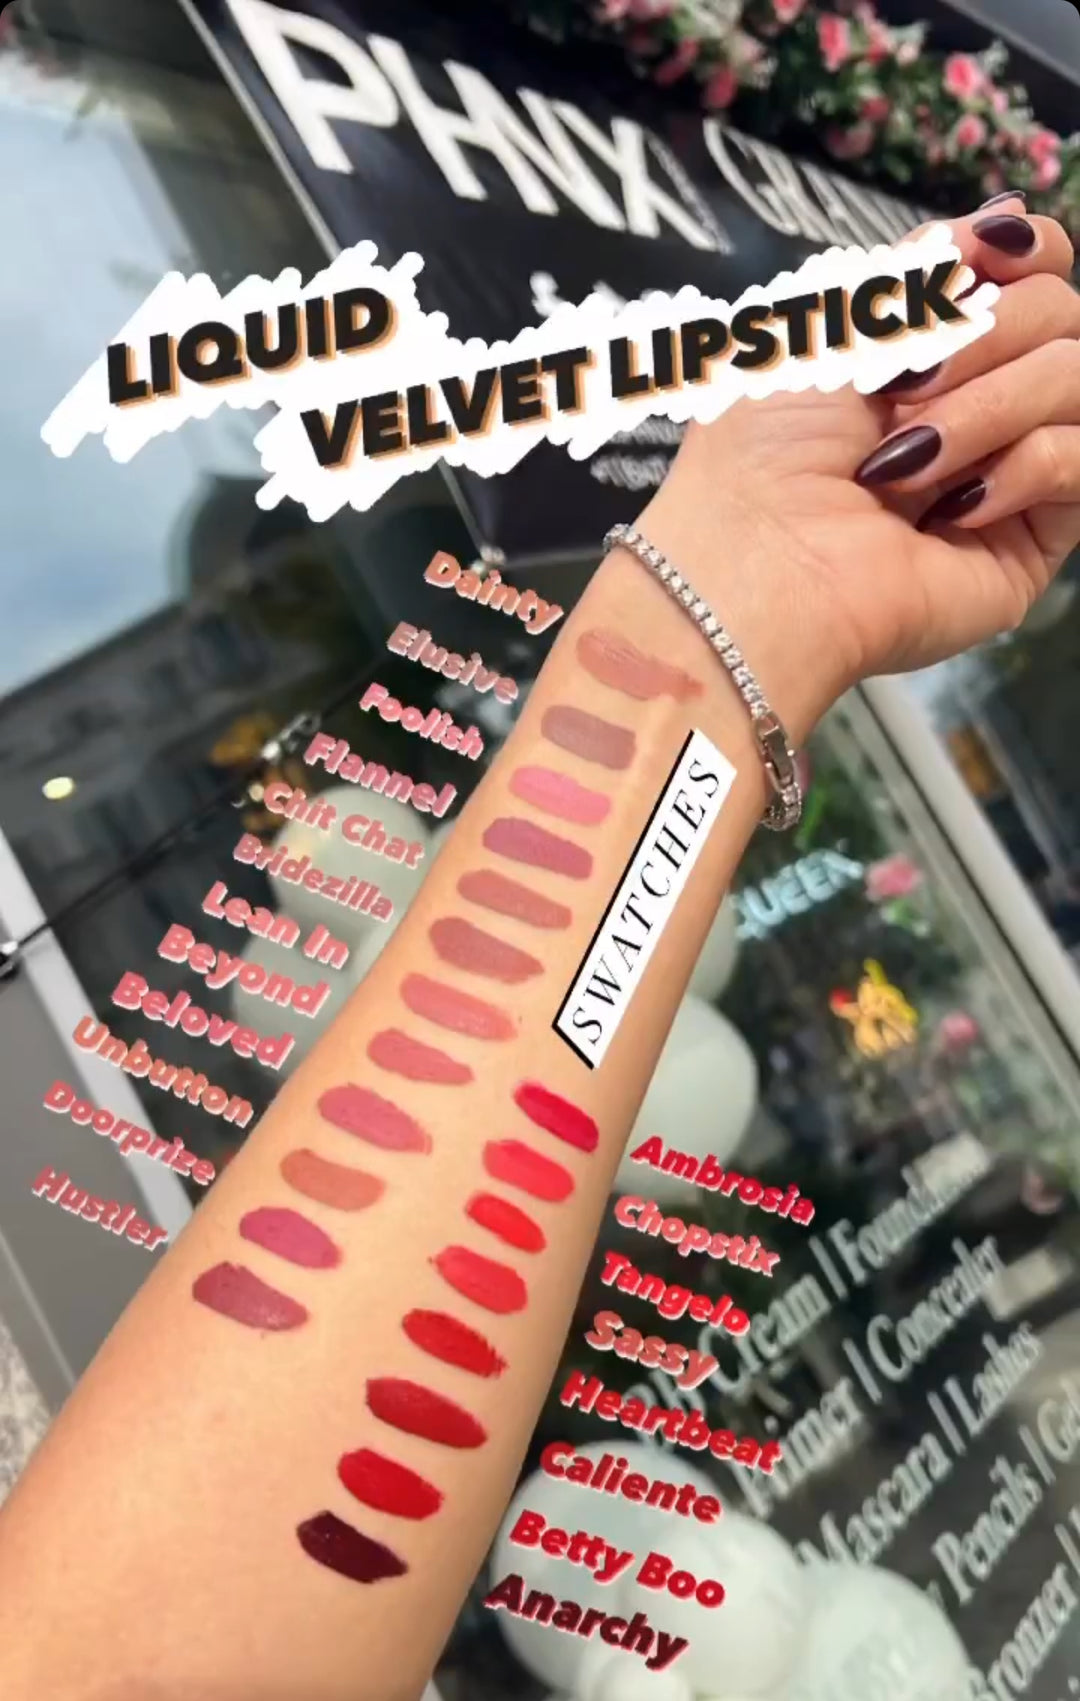 Liquid Velvet Lipstick.